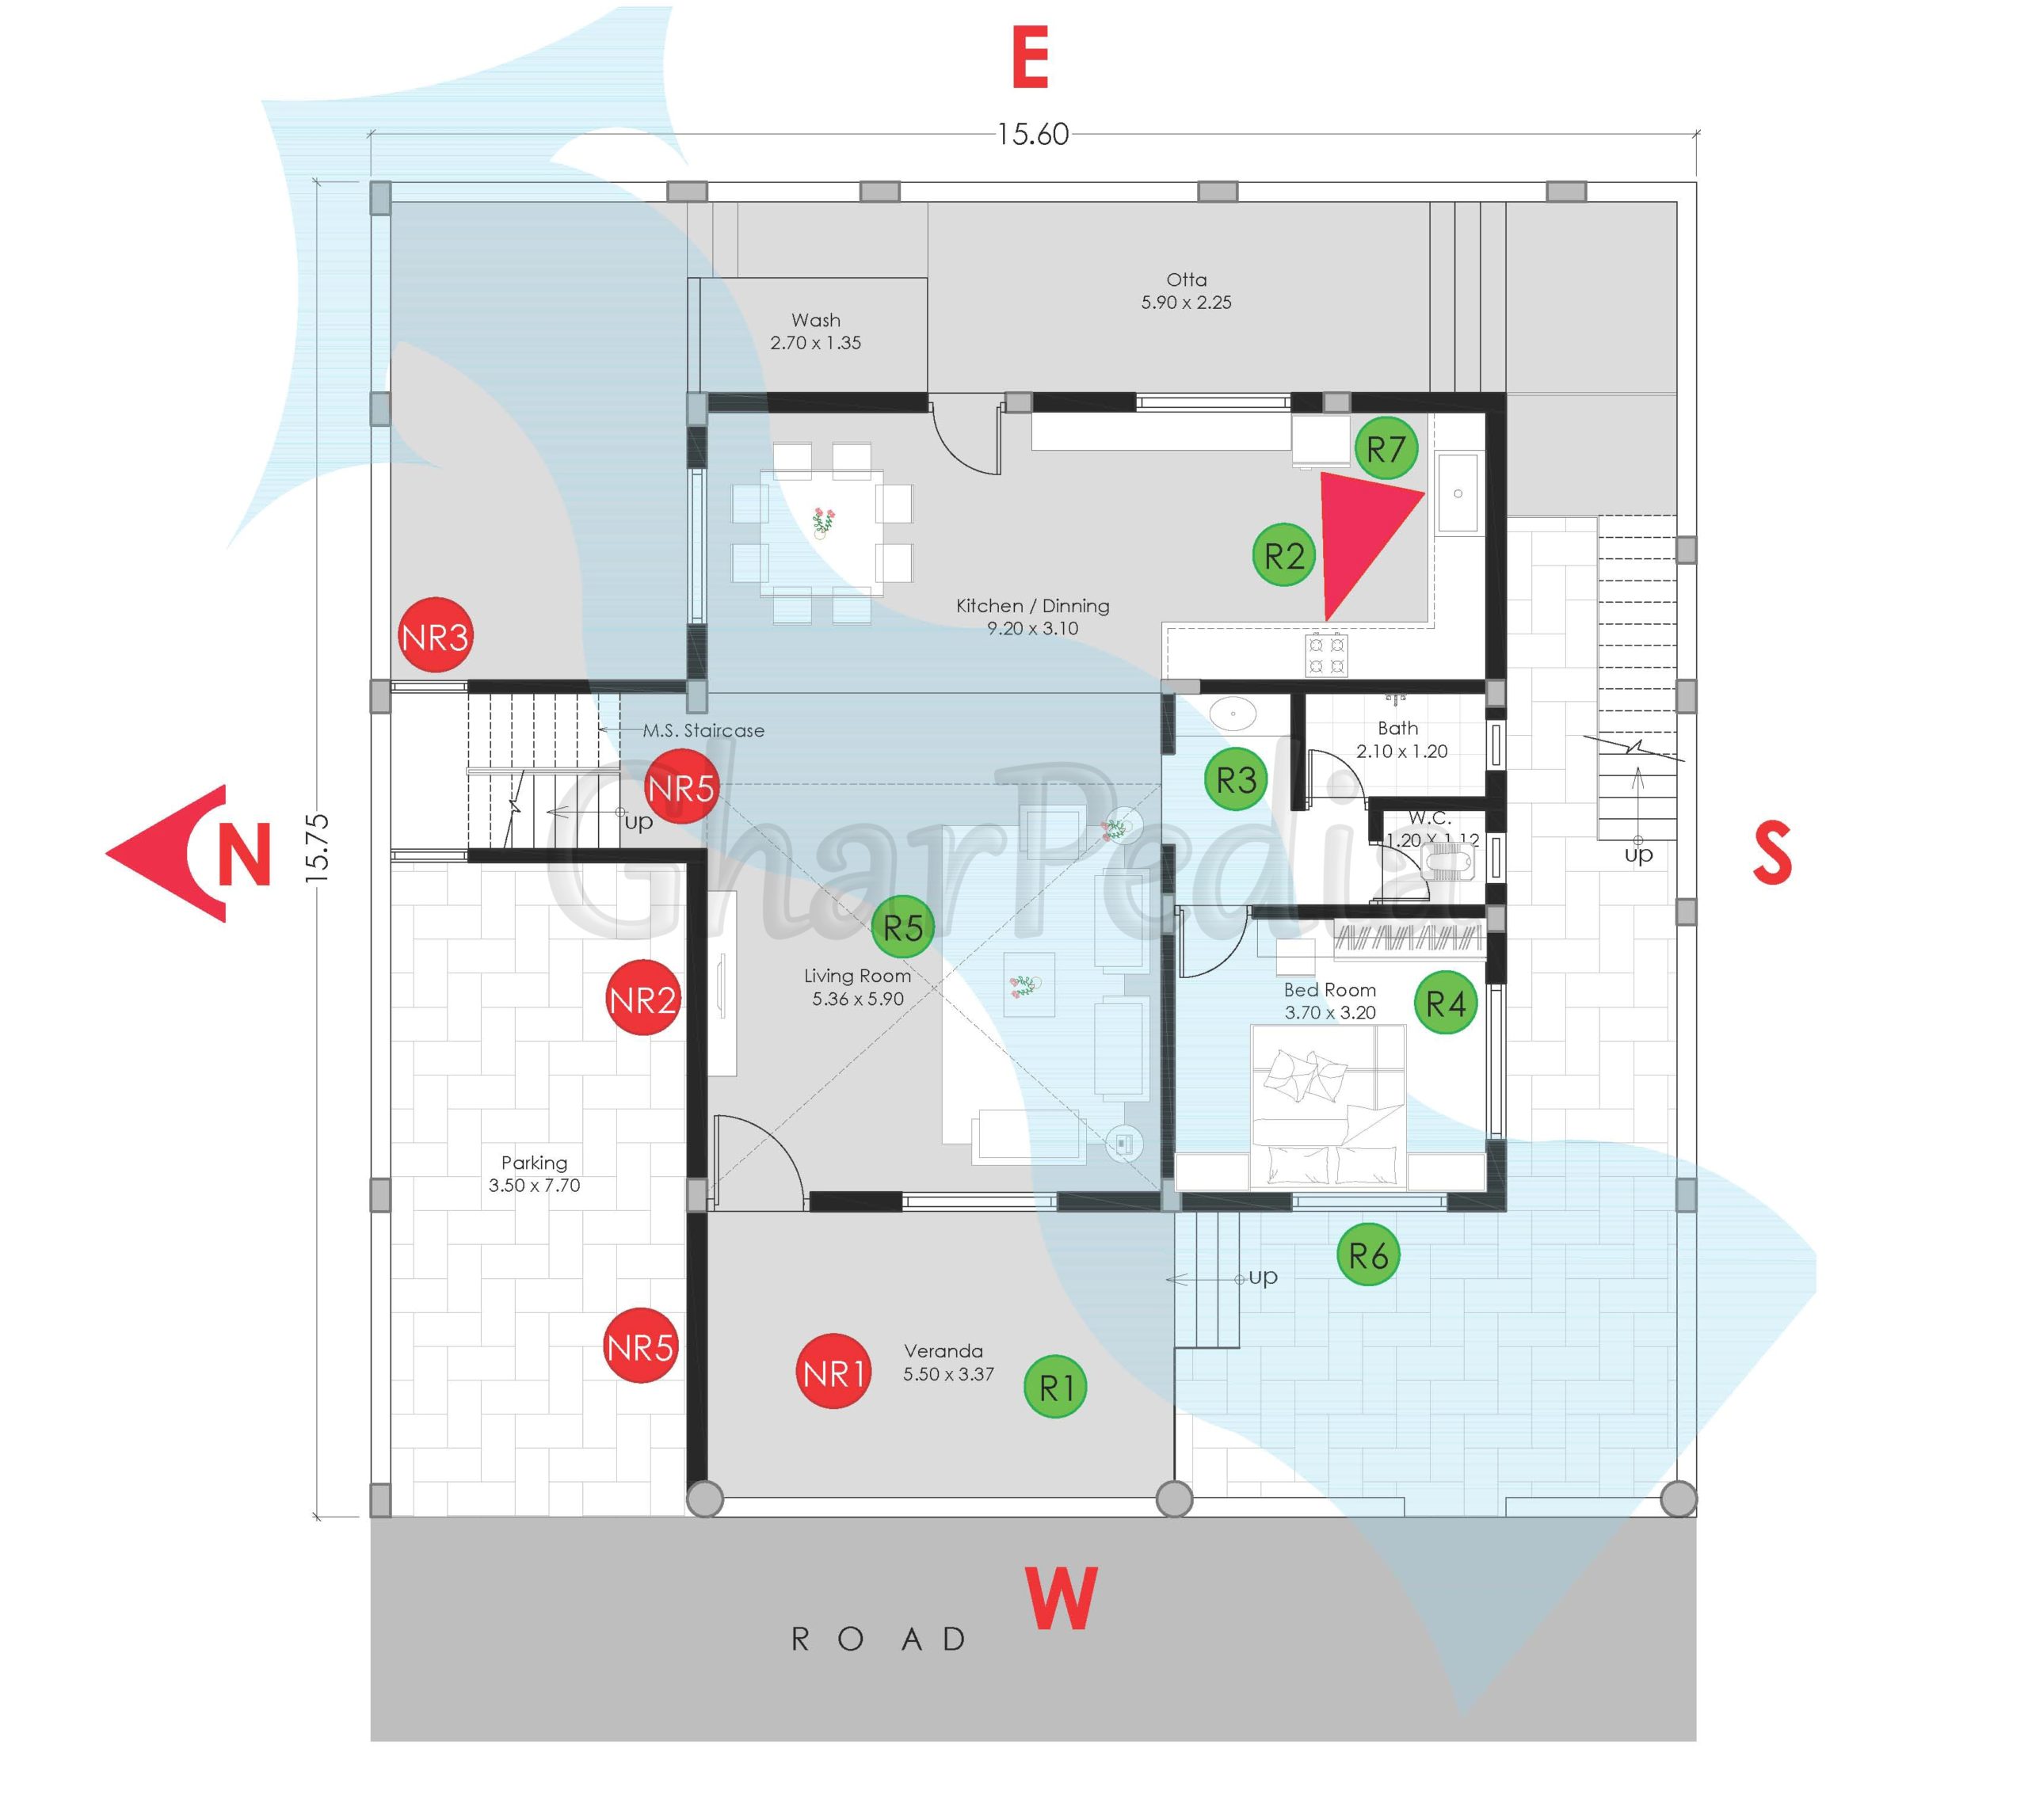 Plan Analysis of 7 BHK Bungalows 245 sq.mt